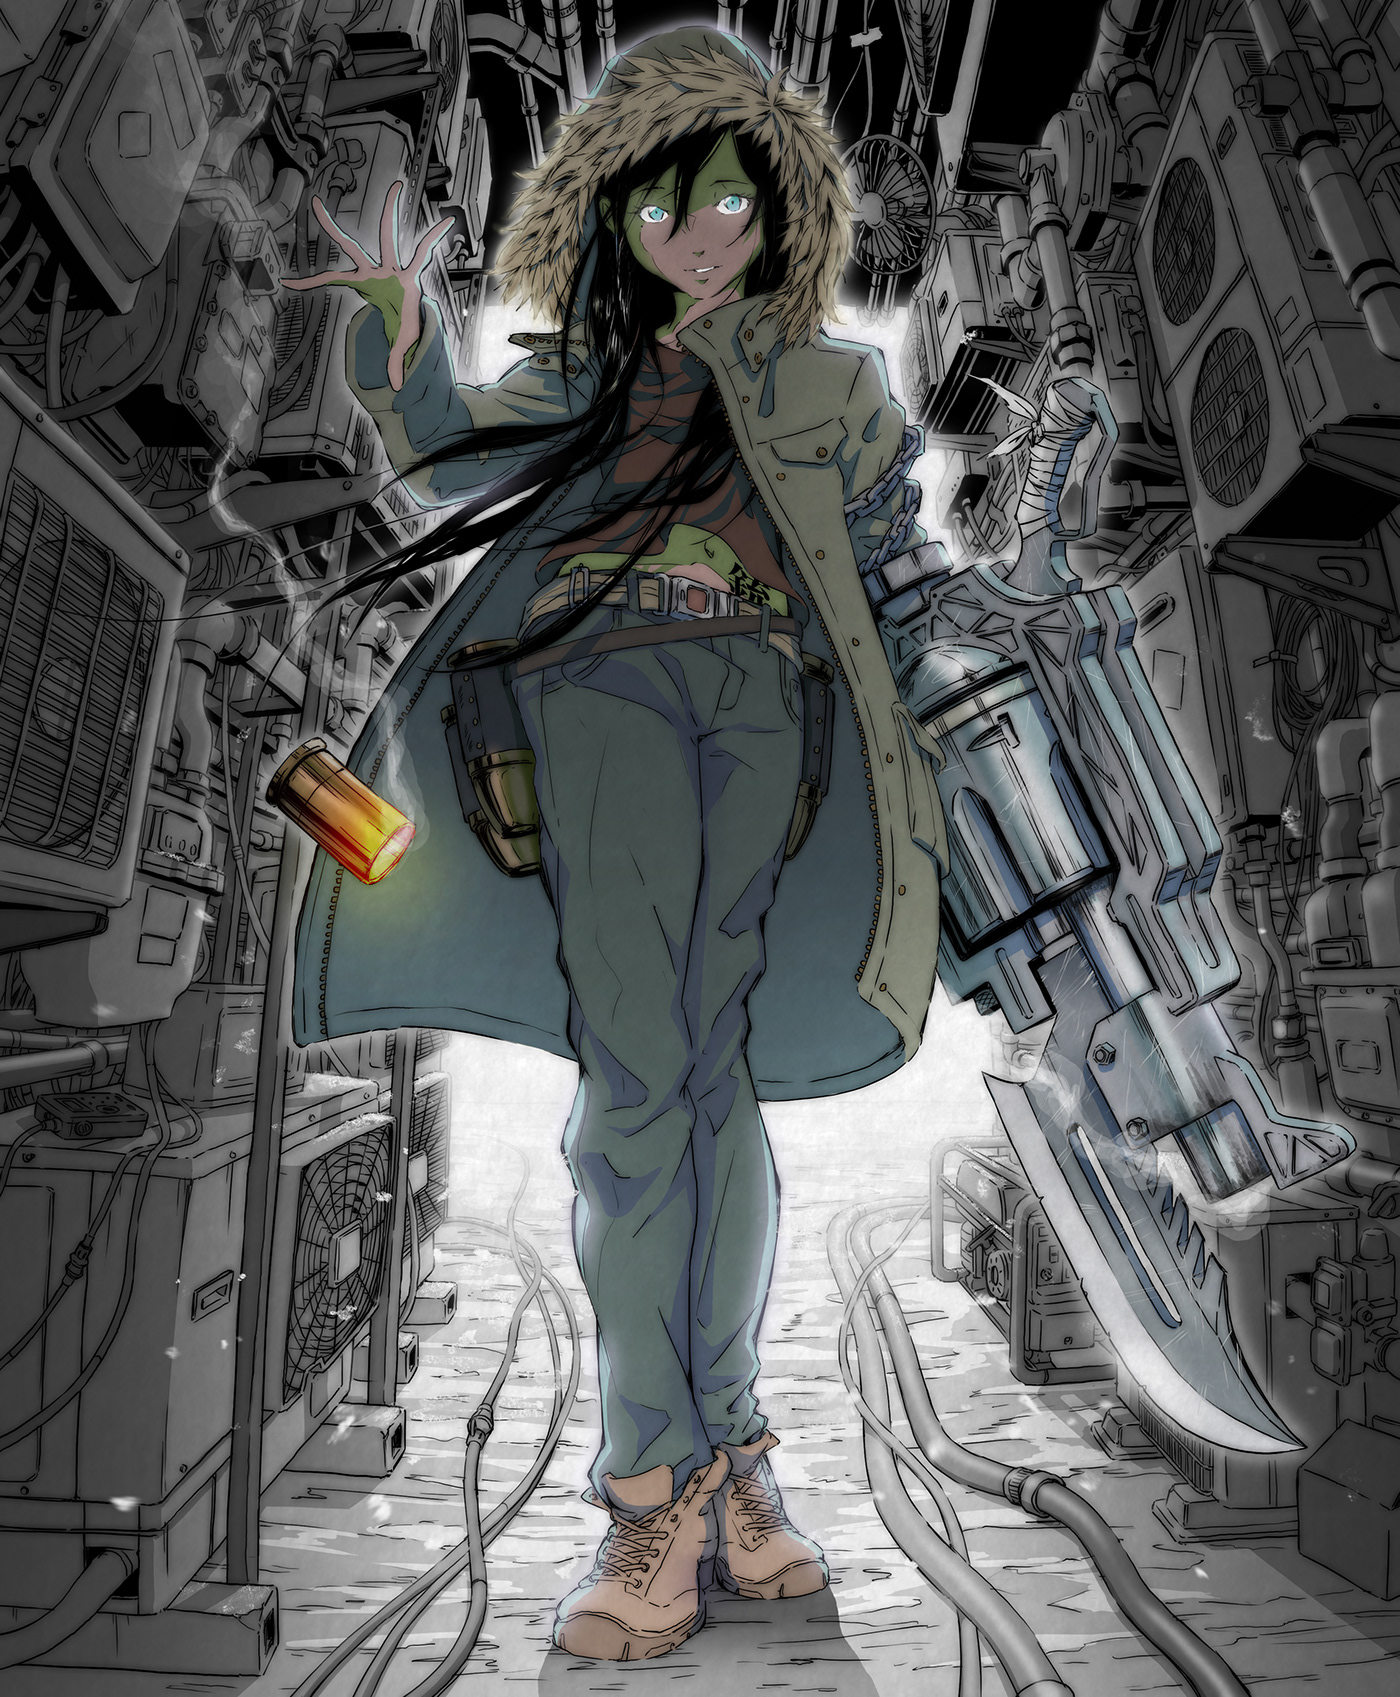 anime anime girl girl Gun knife manga pistol Revolver Weapon